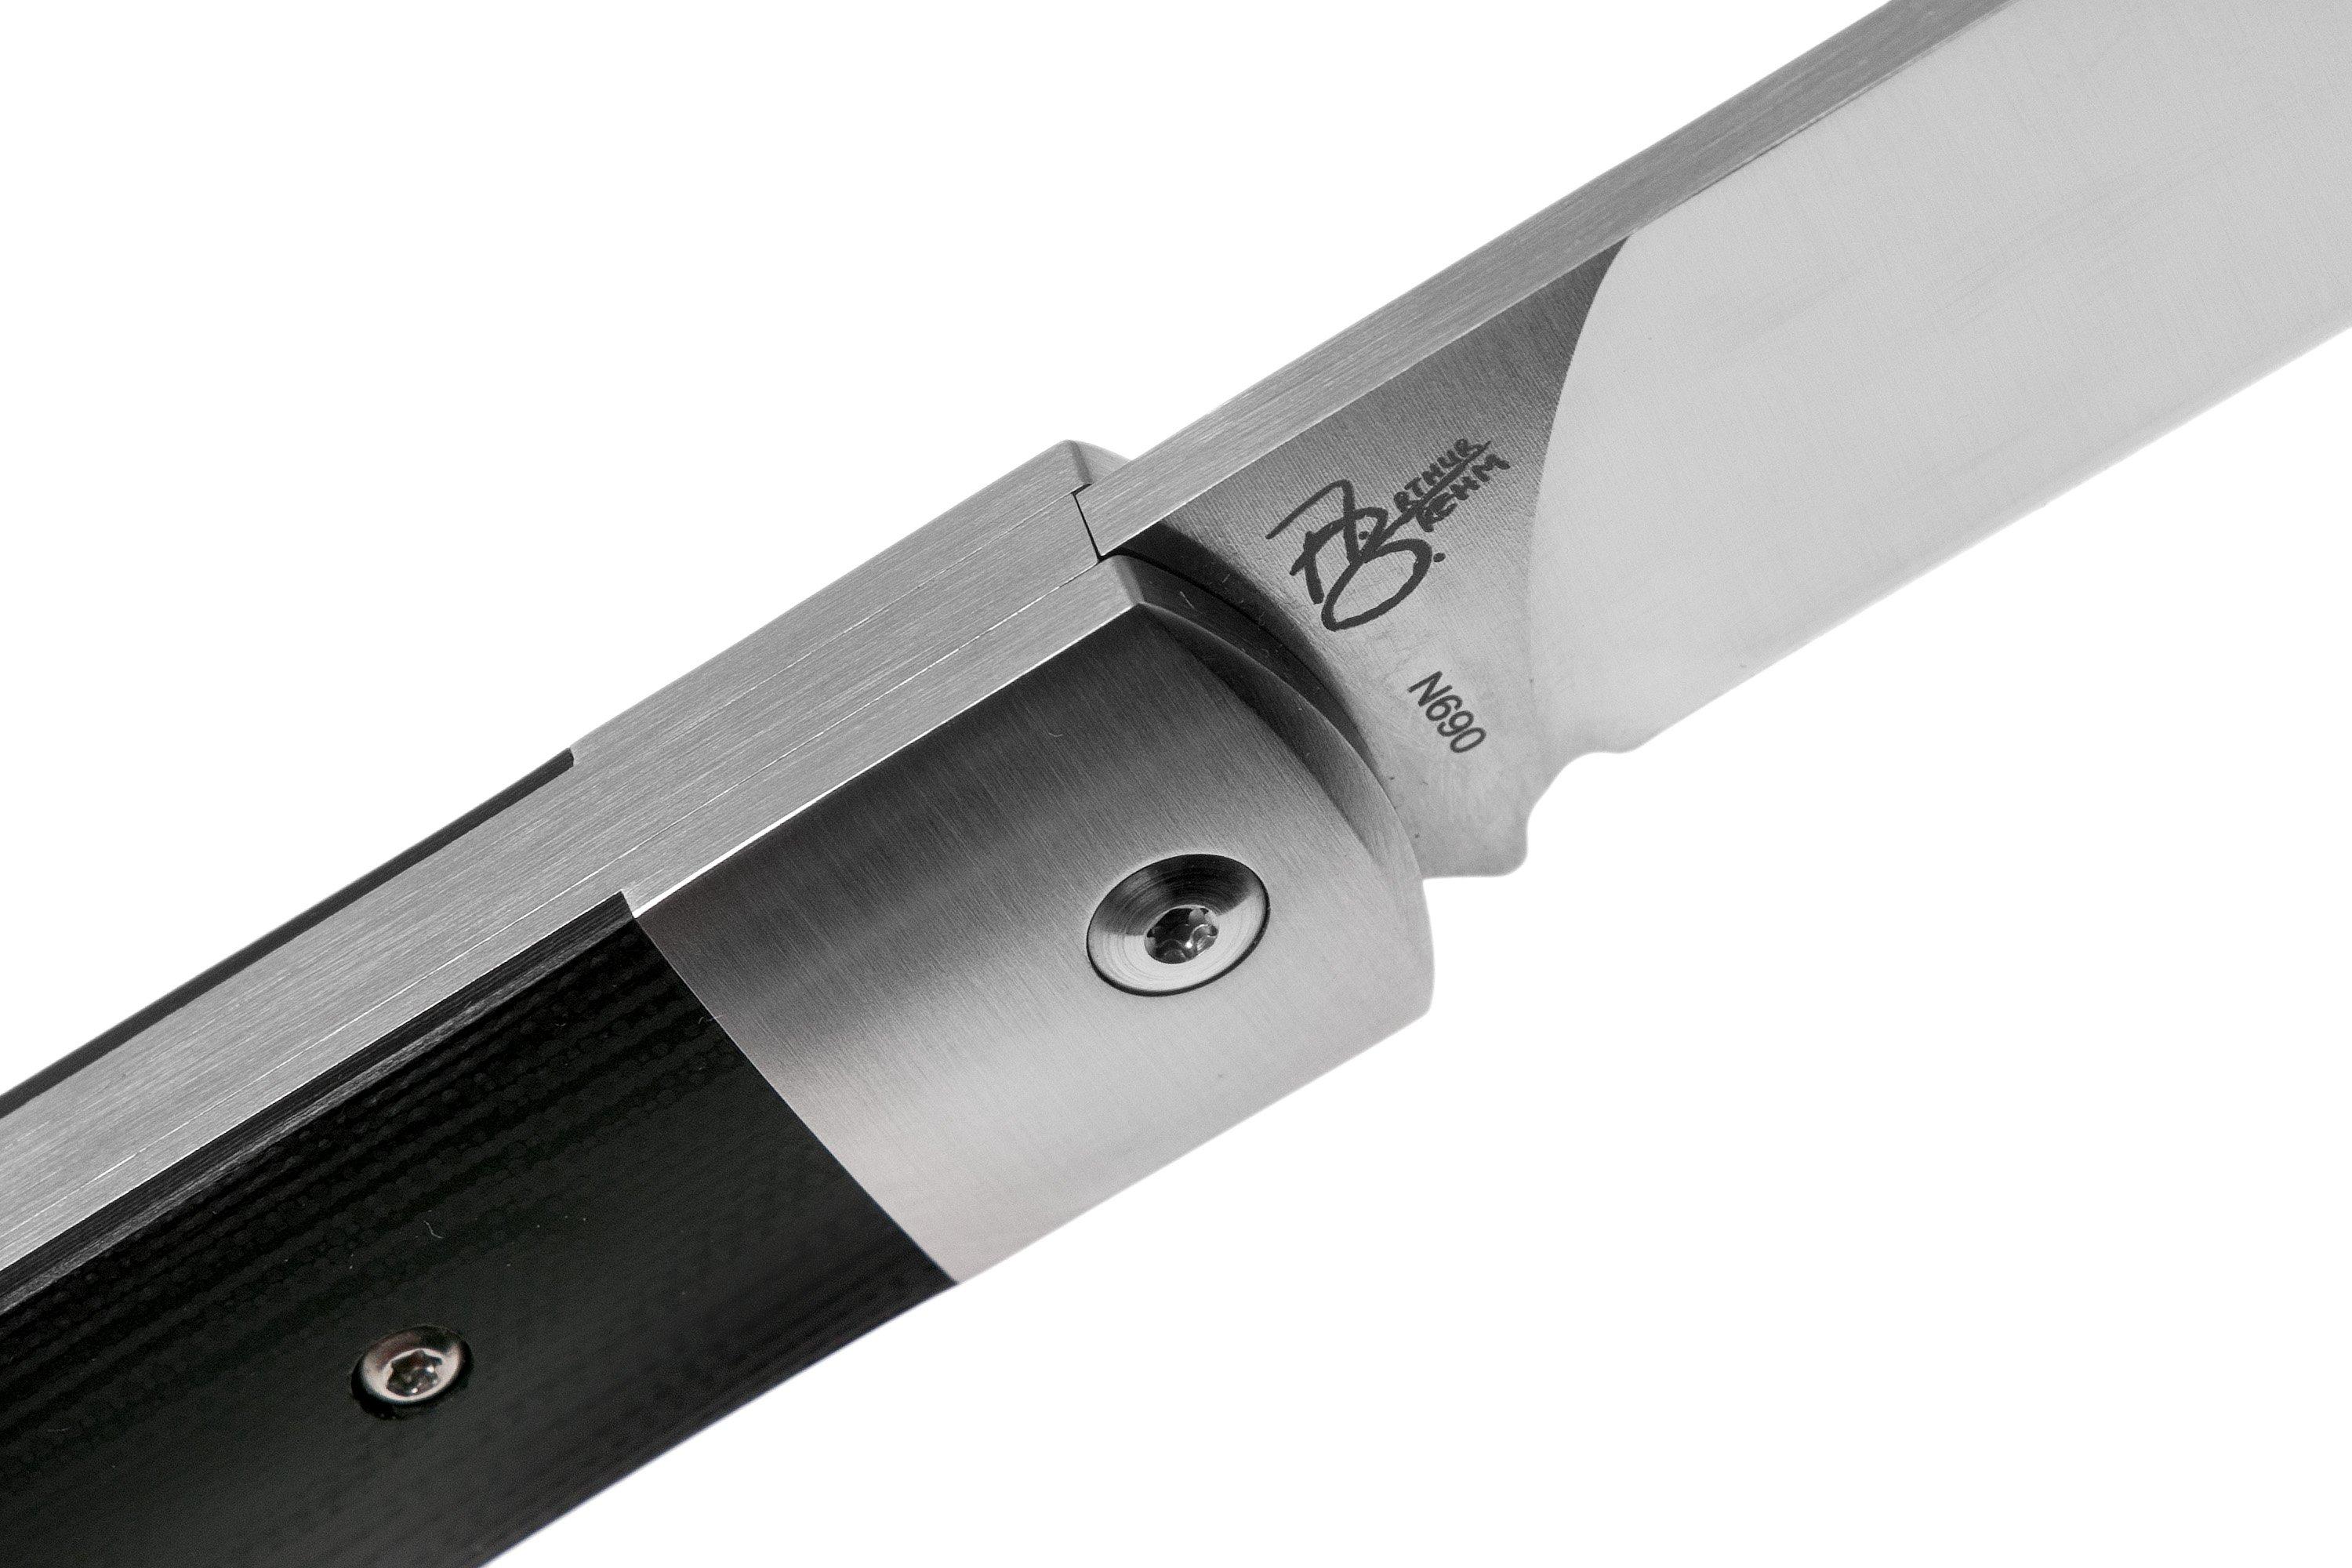 QSP Knife Sthenia QS101-A Black G10 couteau de poche